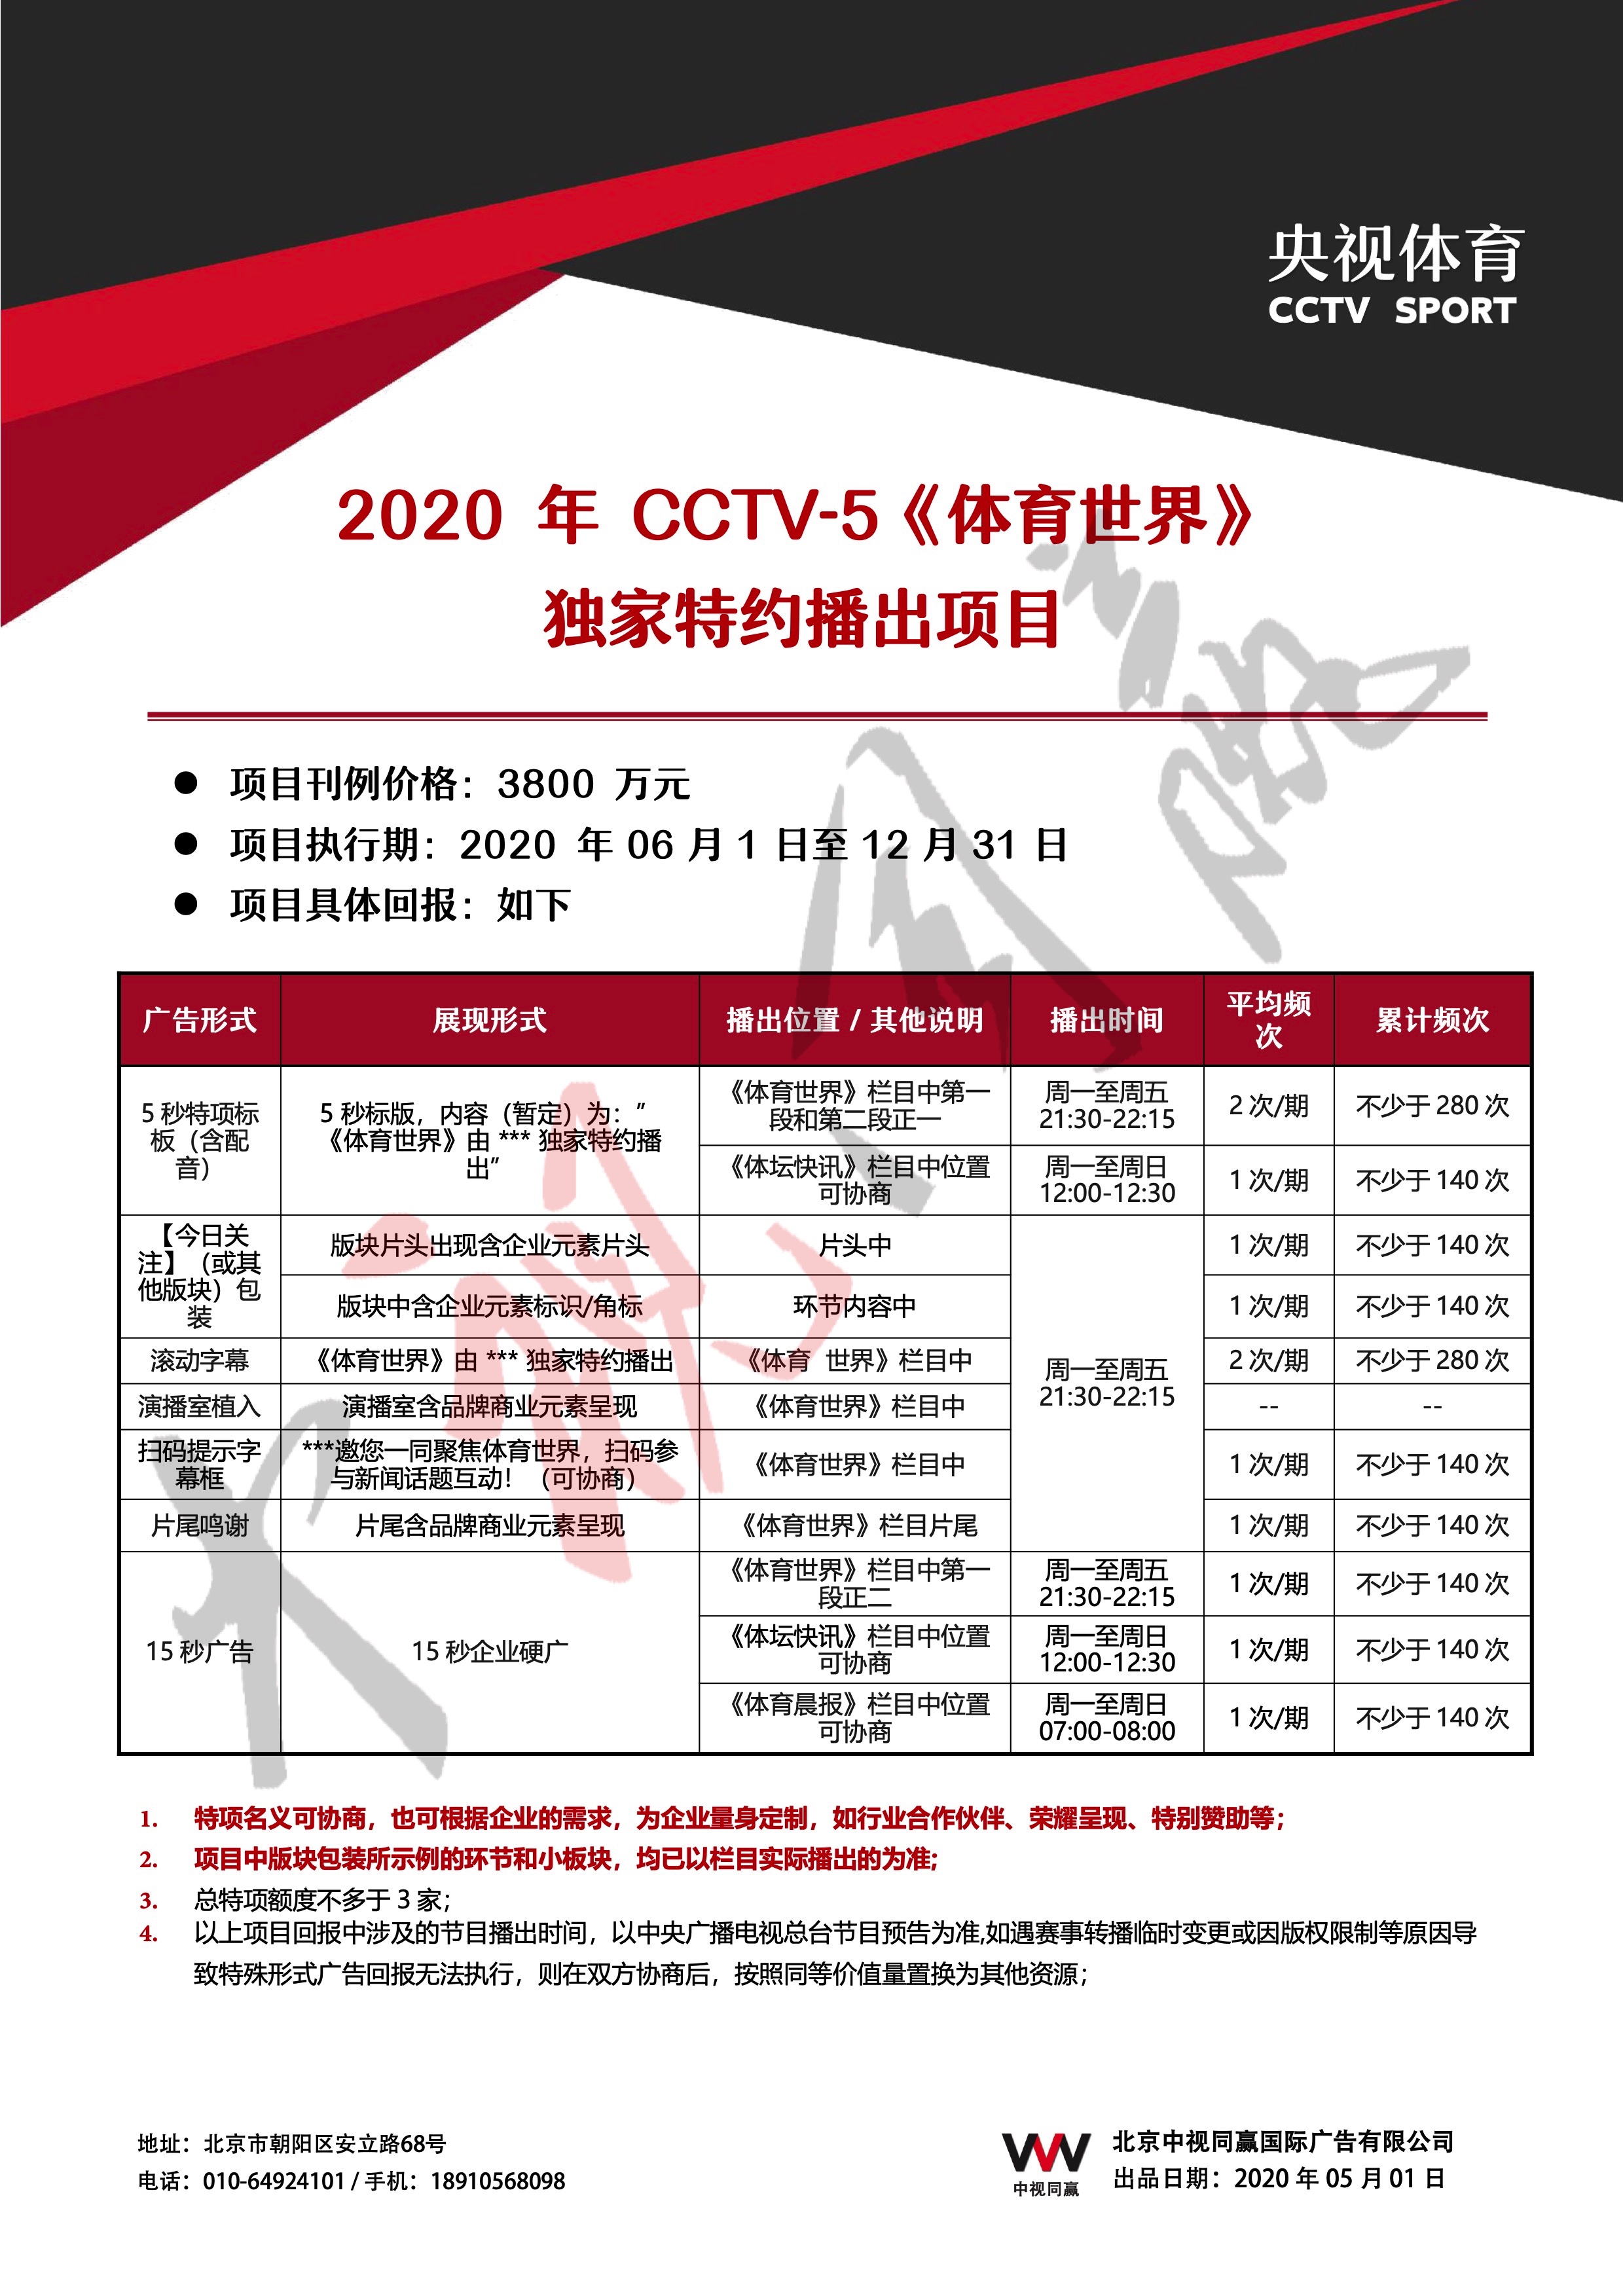 2020年CCTV-5《体育世界》独家特约播出